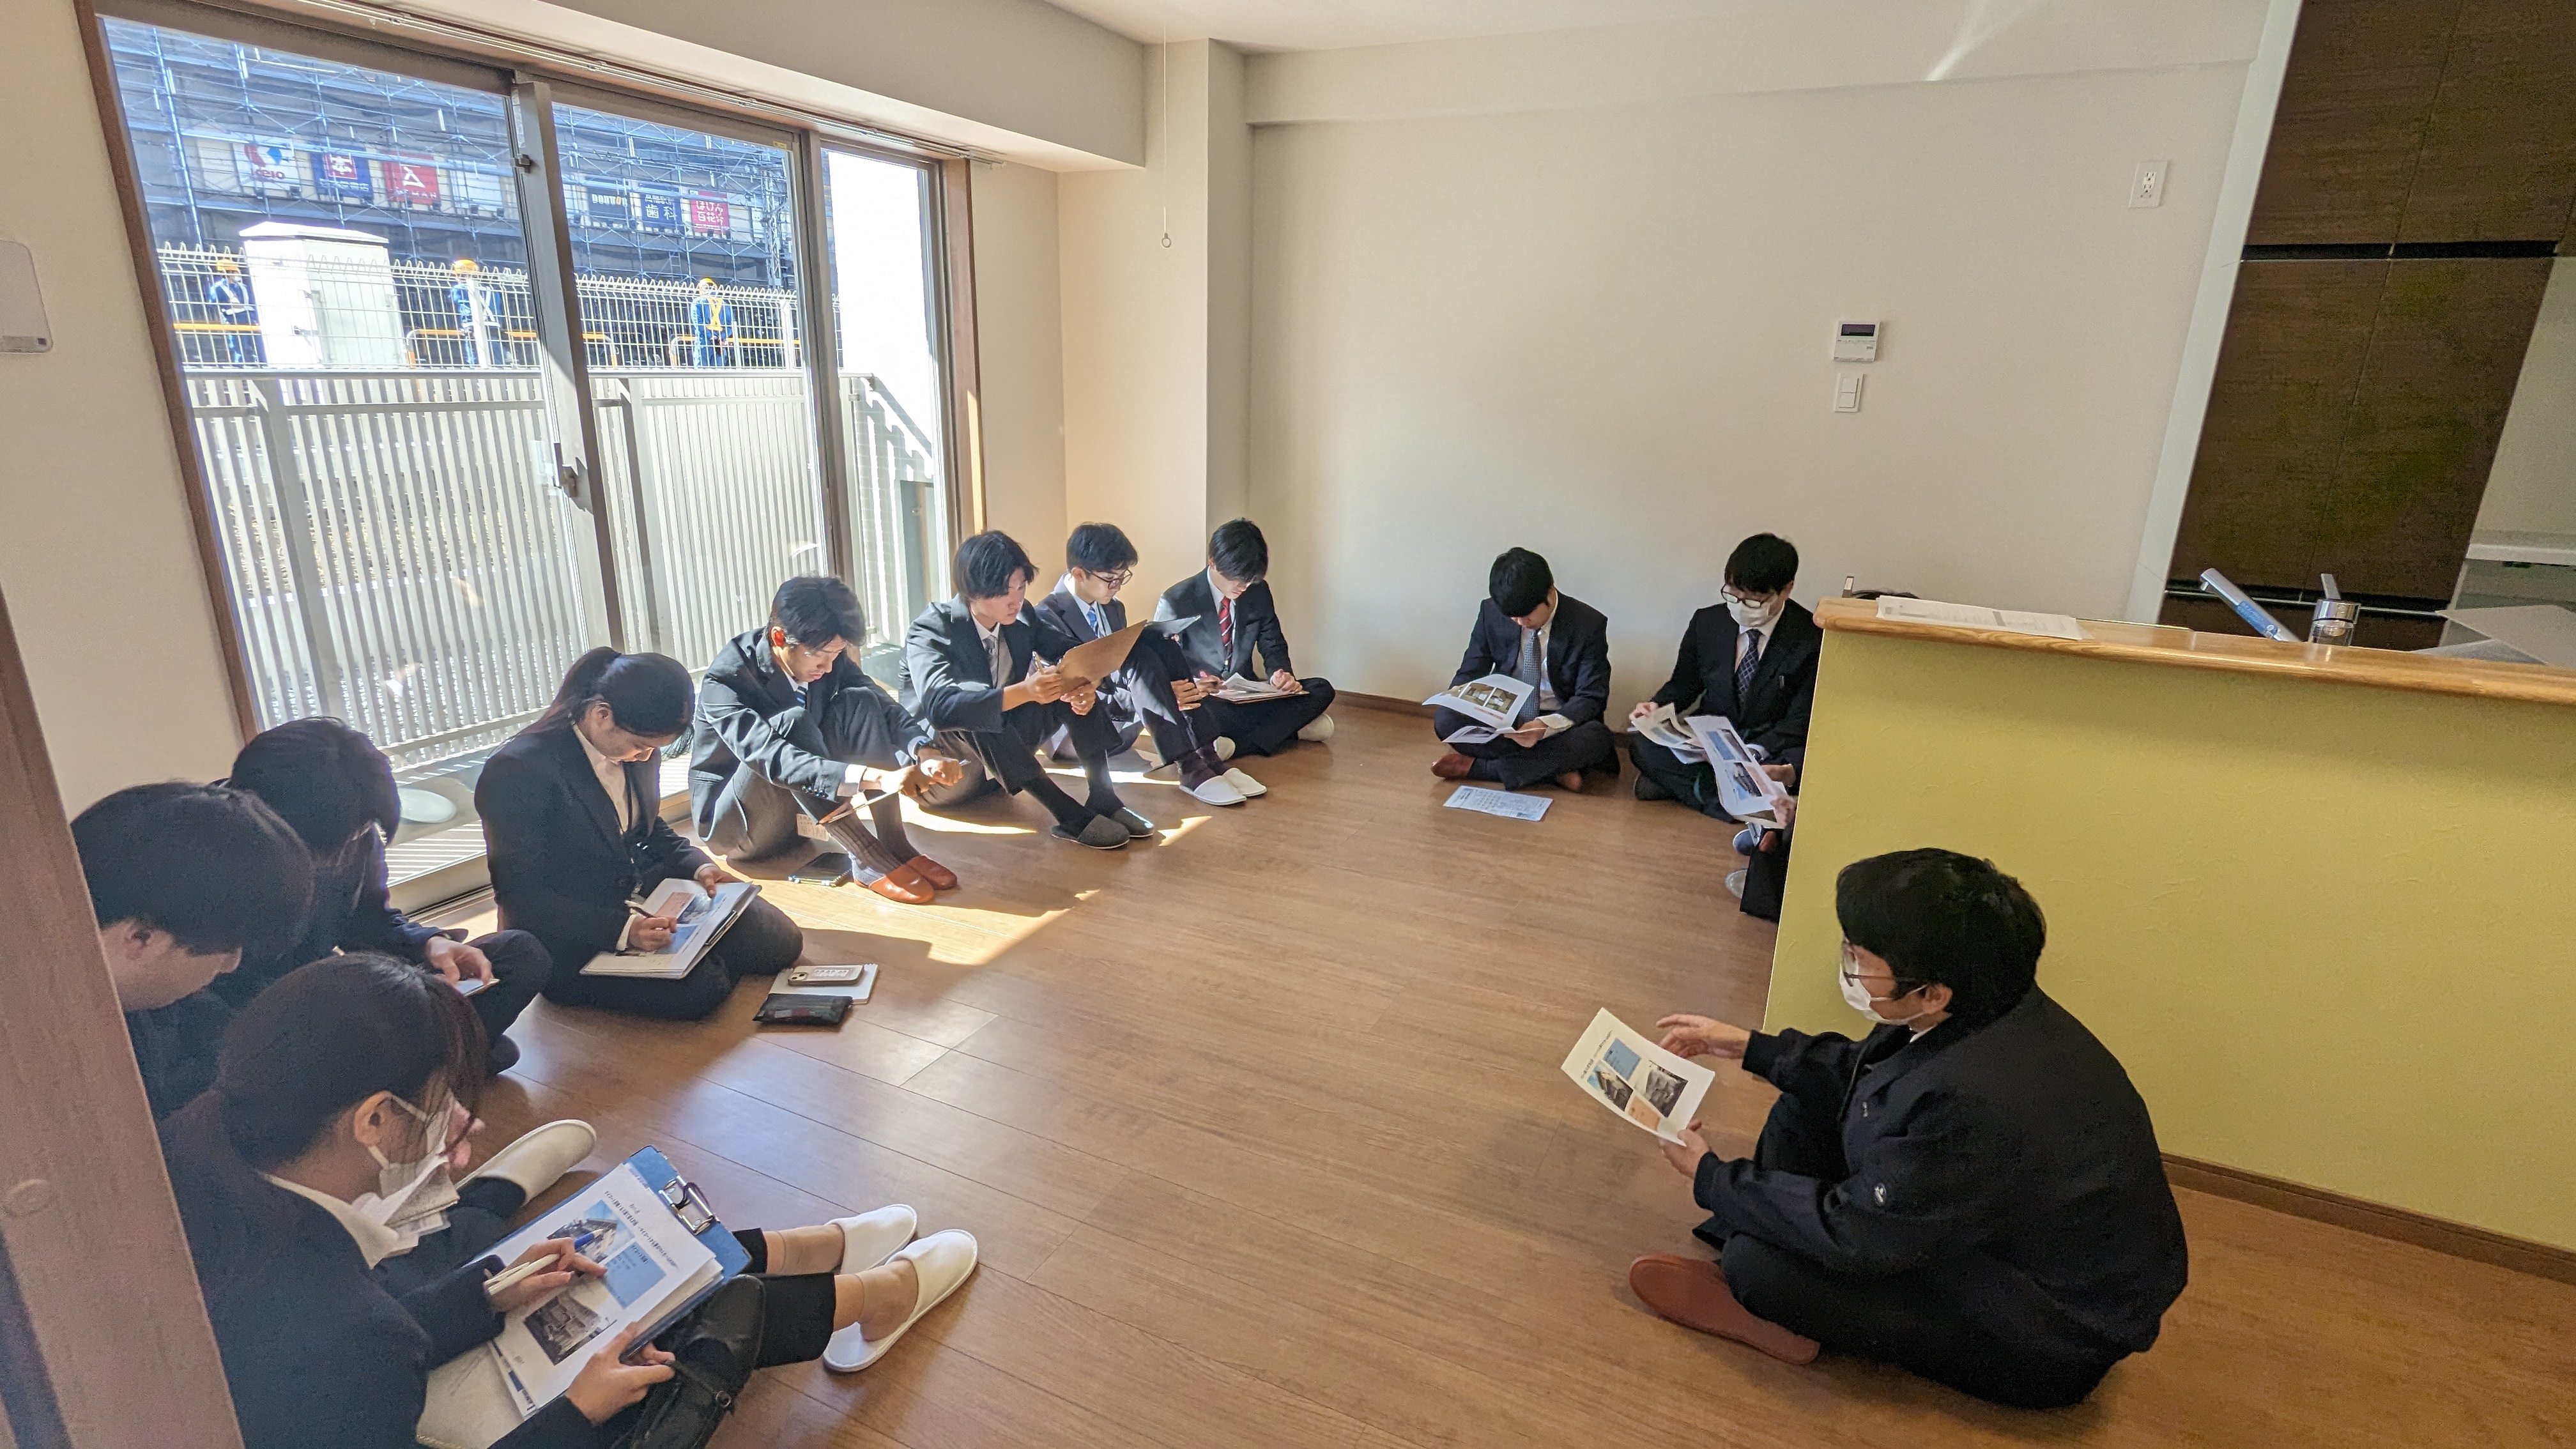 ～午前の部～</br>新築賃貸マンション「M.Koti Takahata」視察</br>当社初の建て替えプロジェクトを題材に、</br>課題解決までの道のりを現地で学びました。